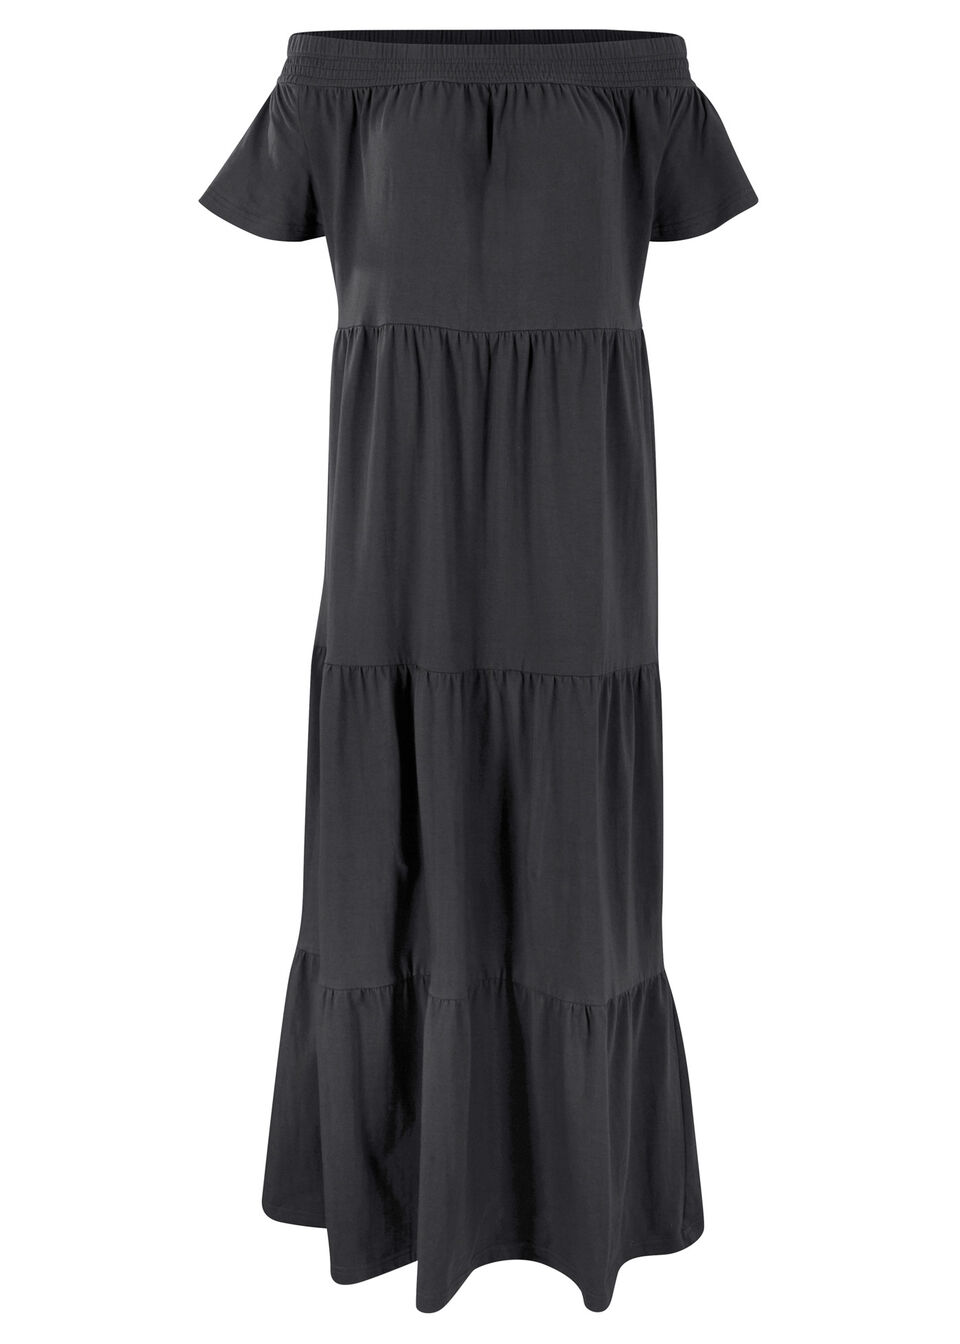 Sukienka Długa sukienka z dżerseju z bawełny, z falbanami i dekoltem carmen bonprix czarny